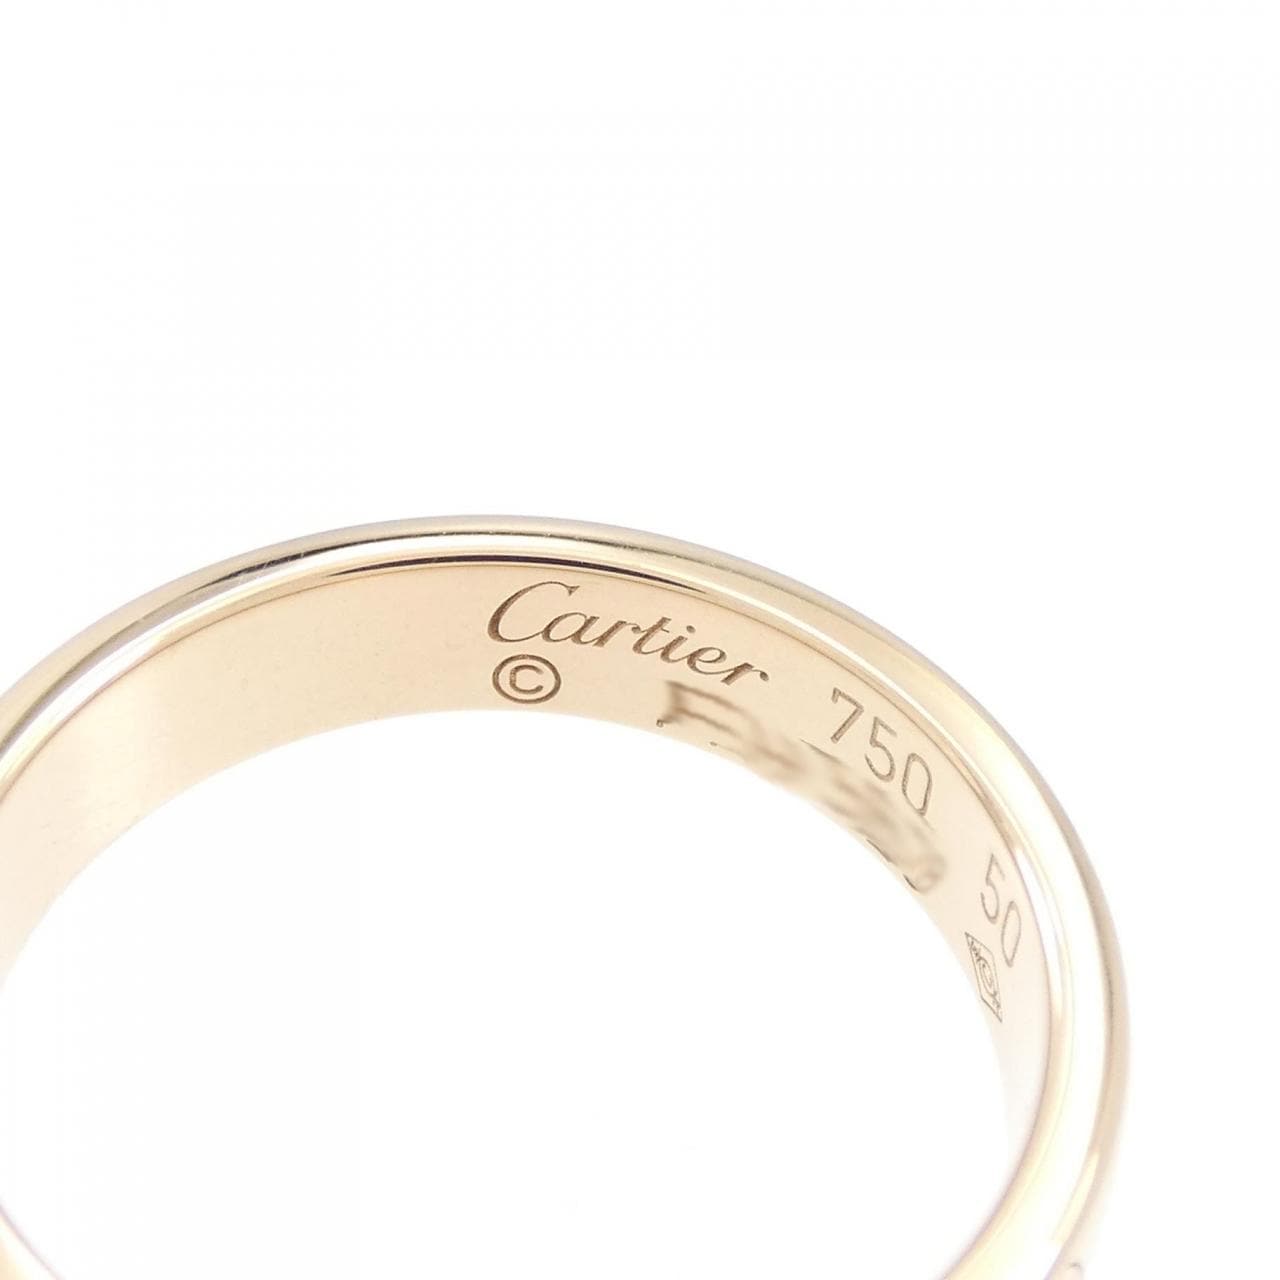 Cartier生日快樂戒指